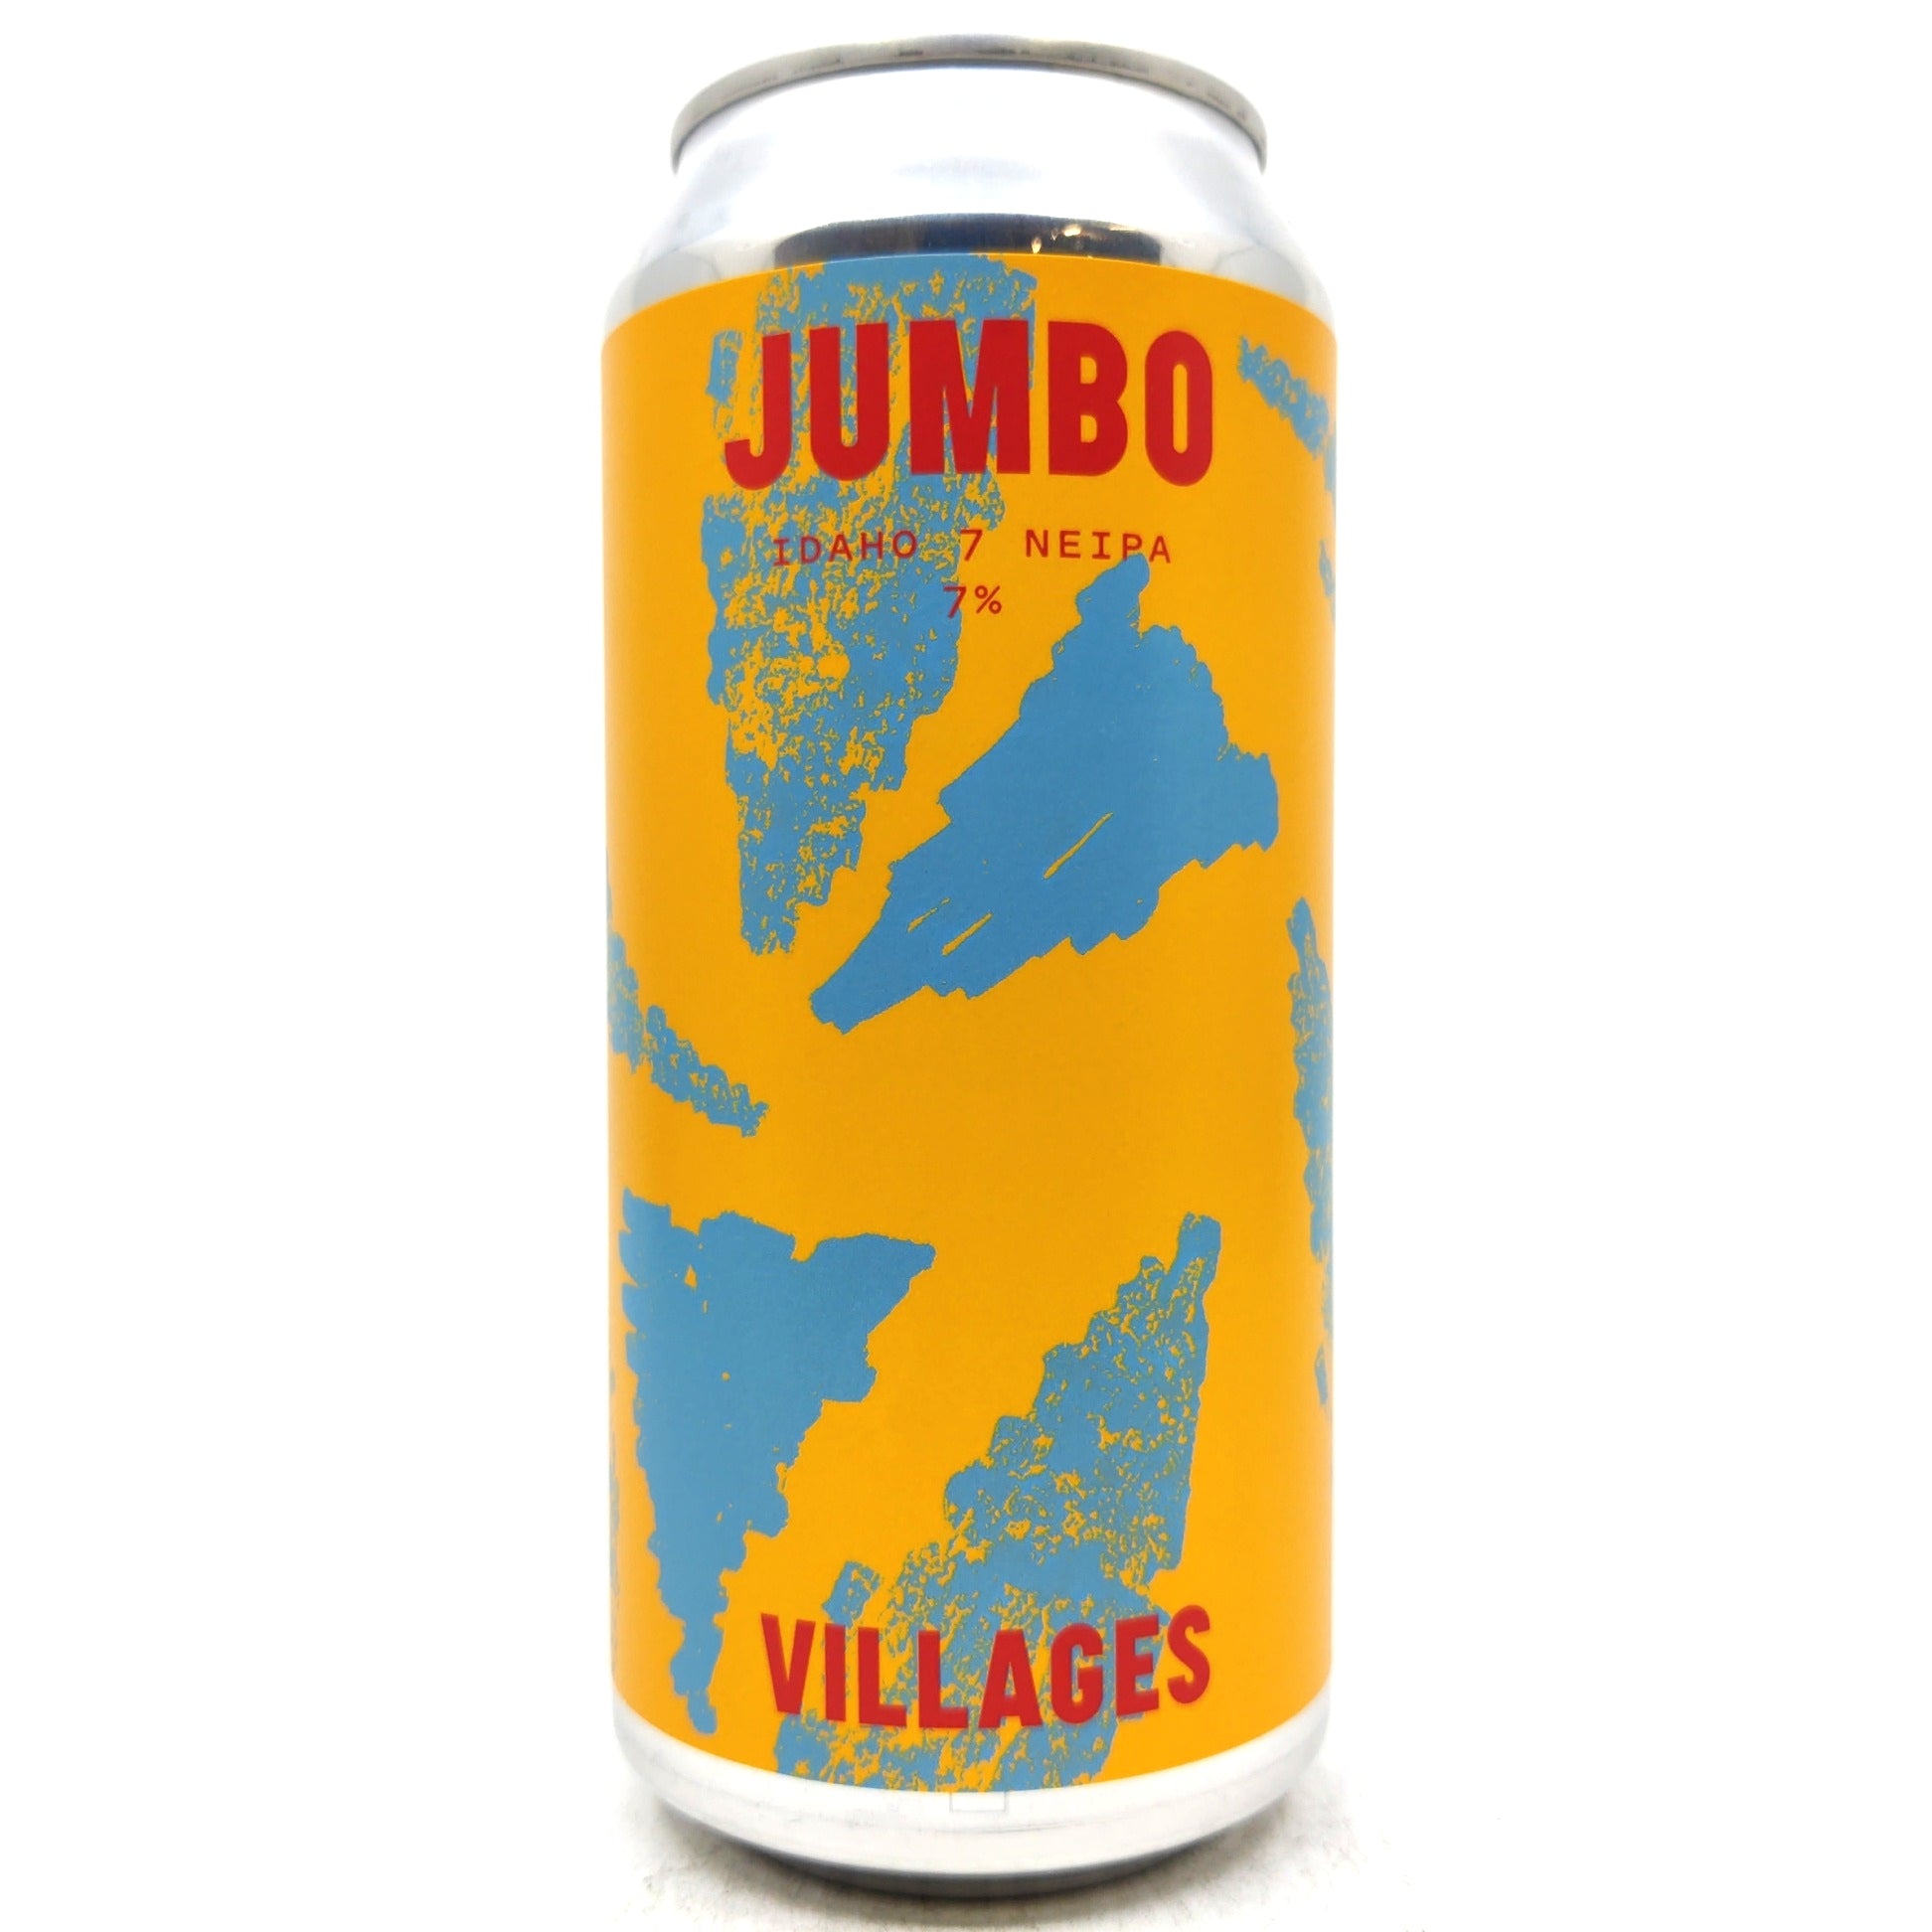 Villages Jumbo Idaho 7 New England IPA 7% (440ml can)-Hop Burns & Black